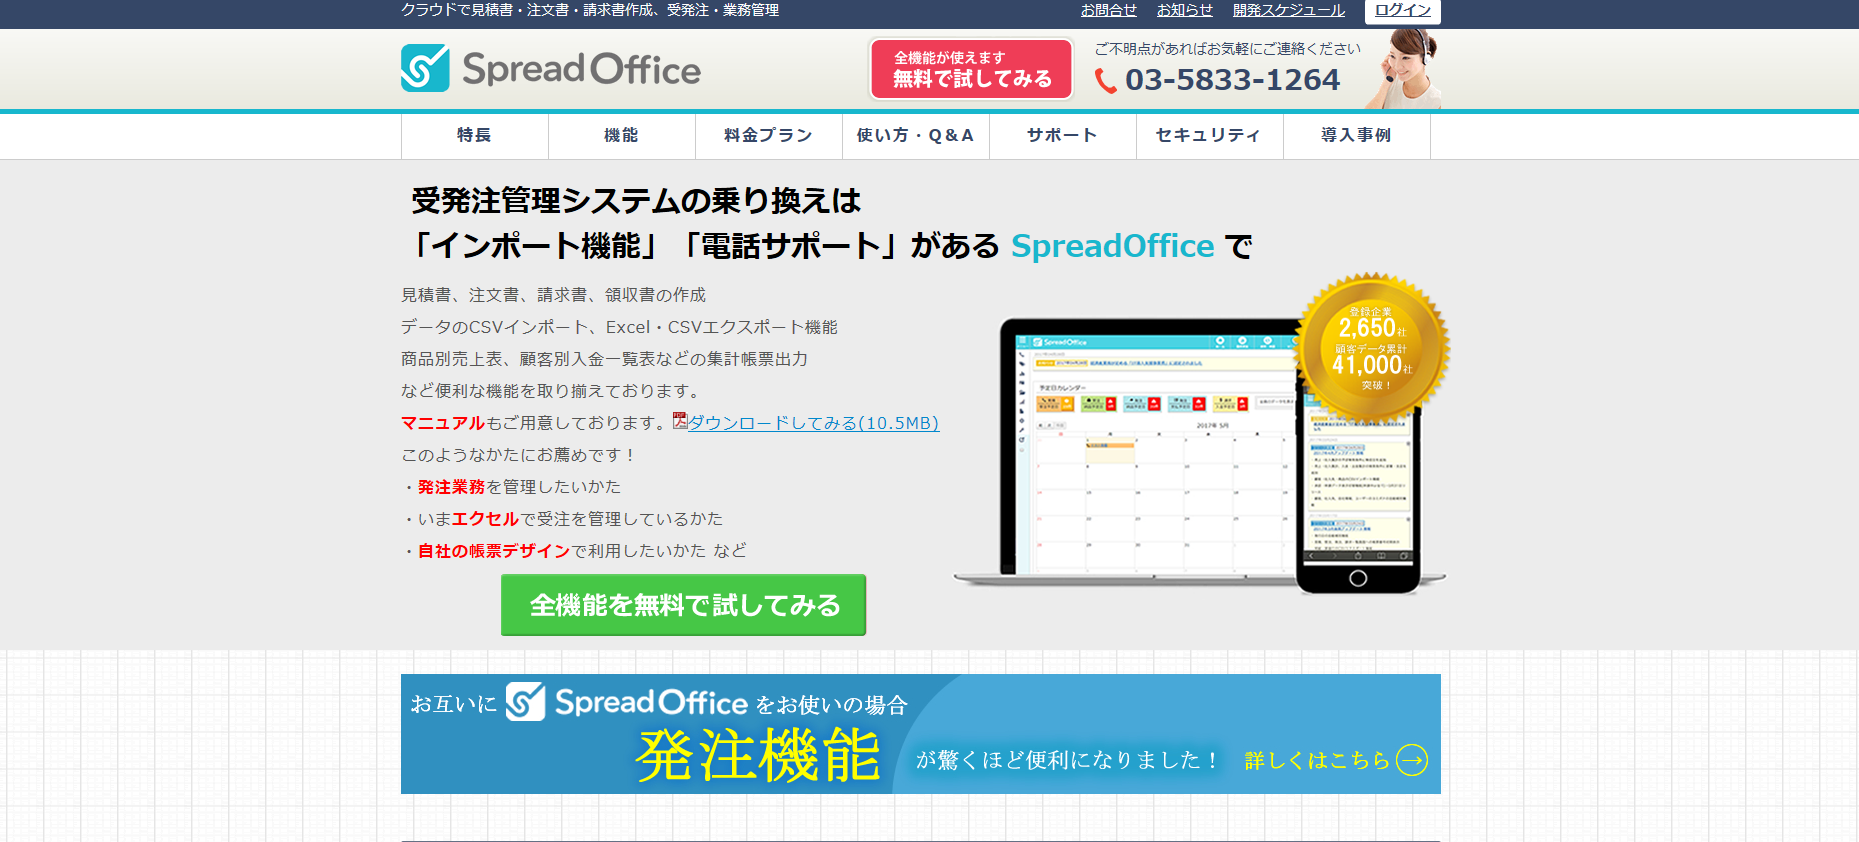 SPreadOffice公式サイト